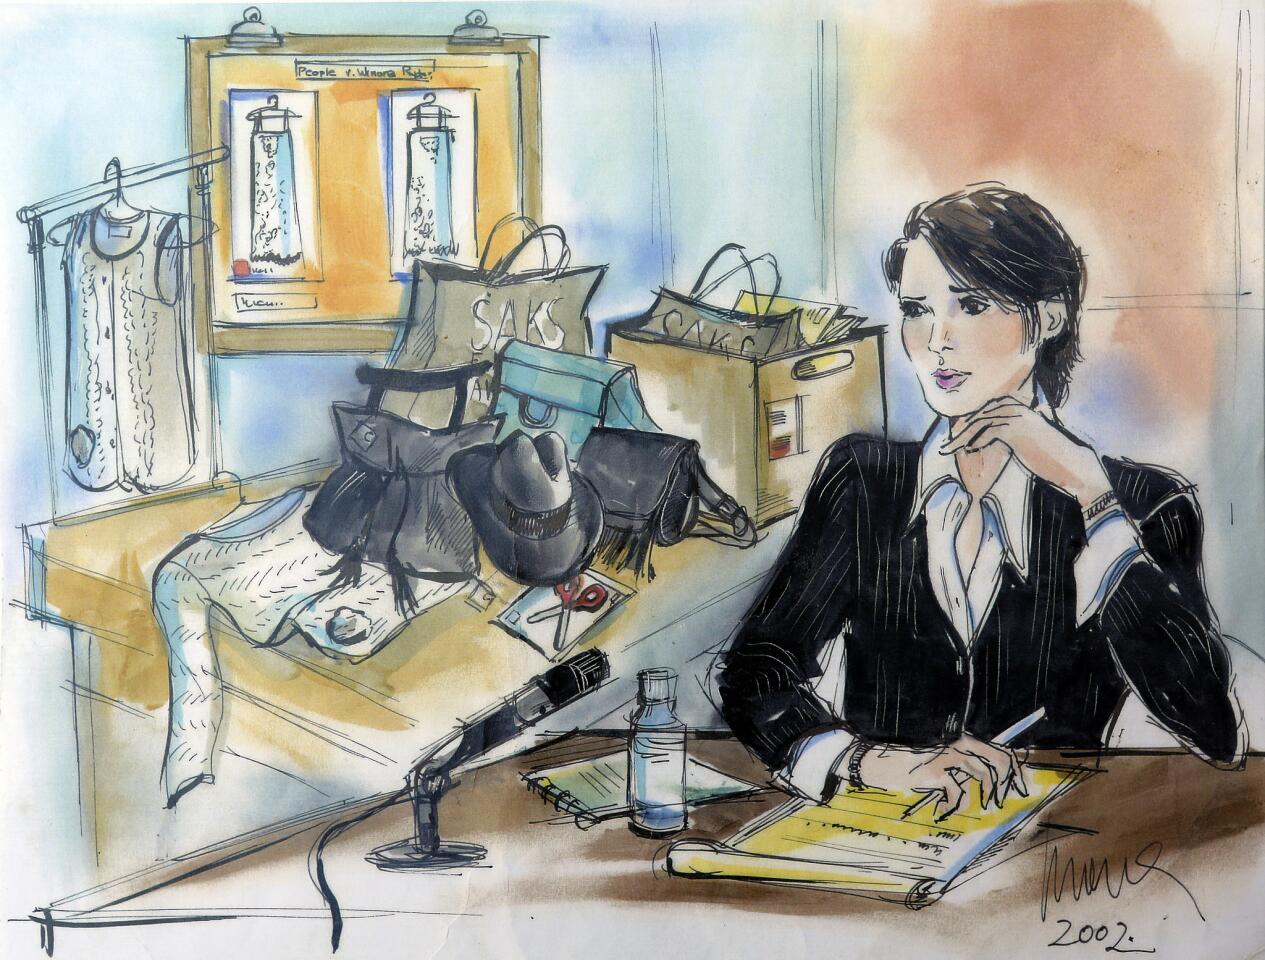 Courtroom sketch artist